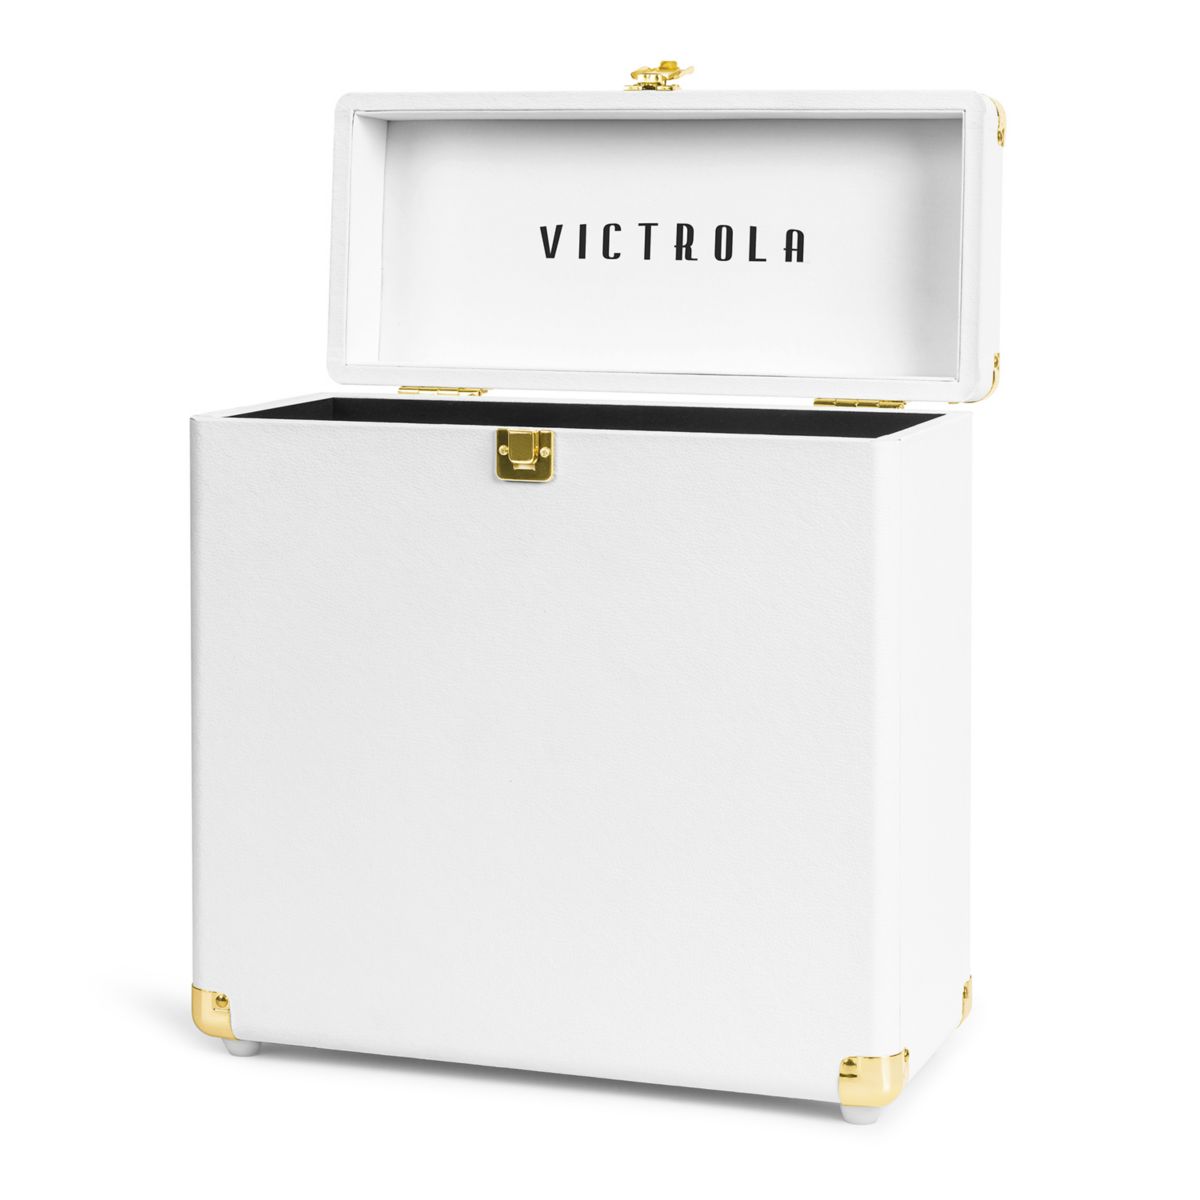 Кейс Victrola Collector для хранения виниловых пластинок Victrola